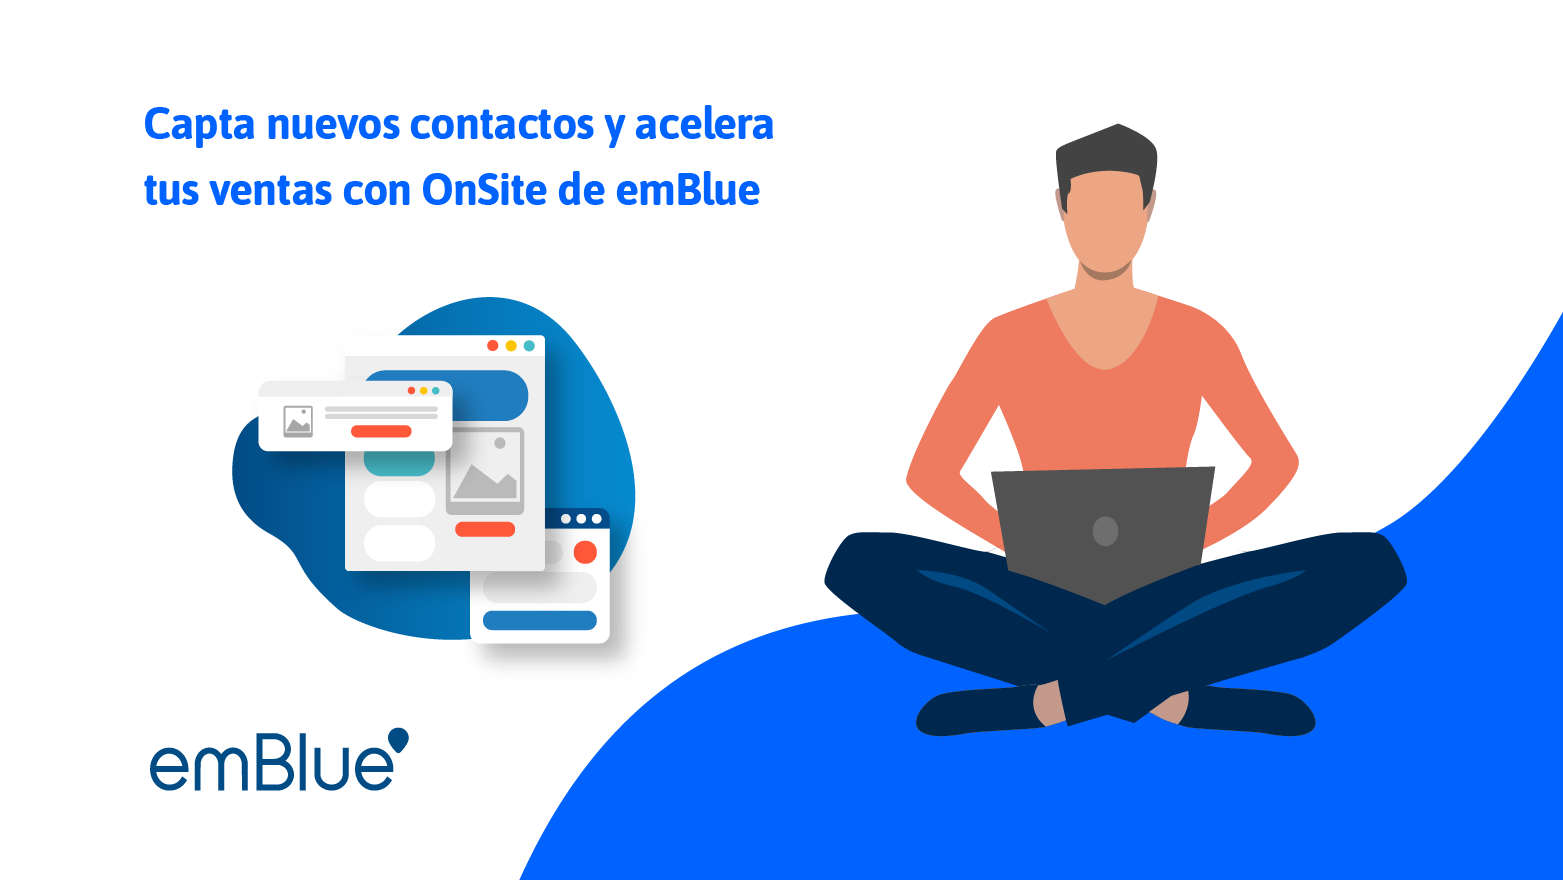 Capta nuevos contactos y acelera tus ventas con OnSite de emBlue